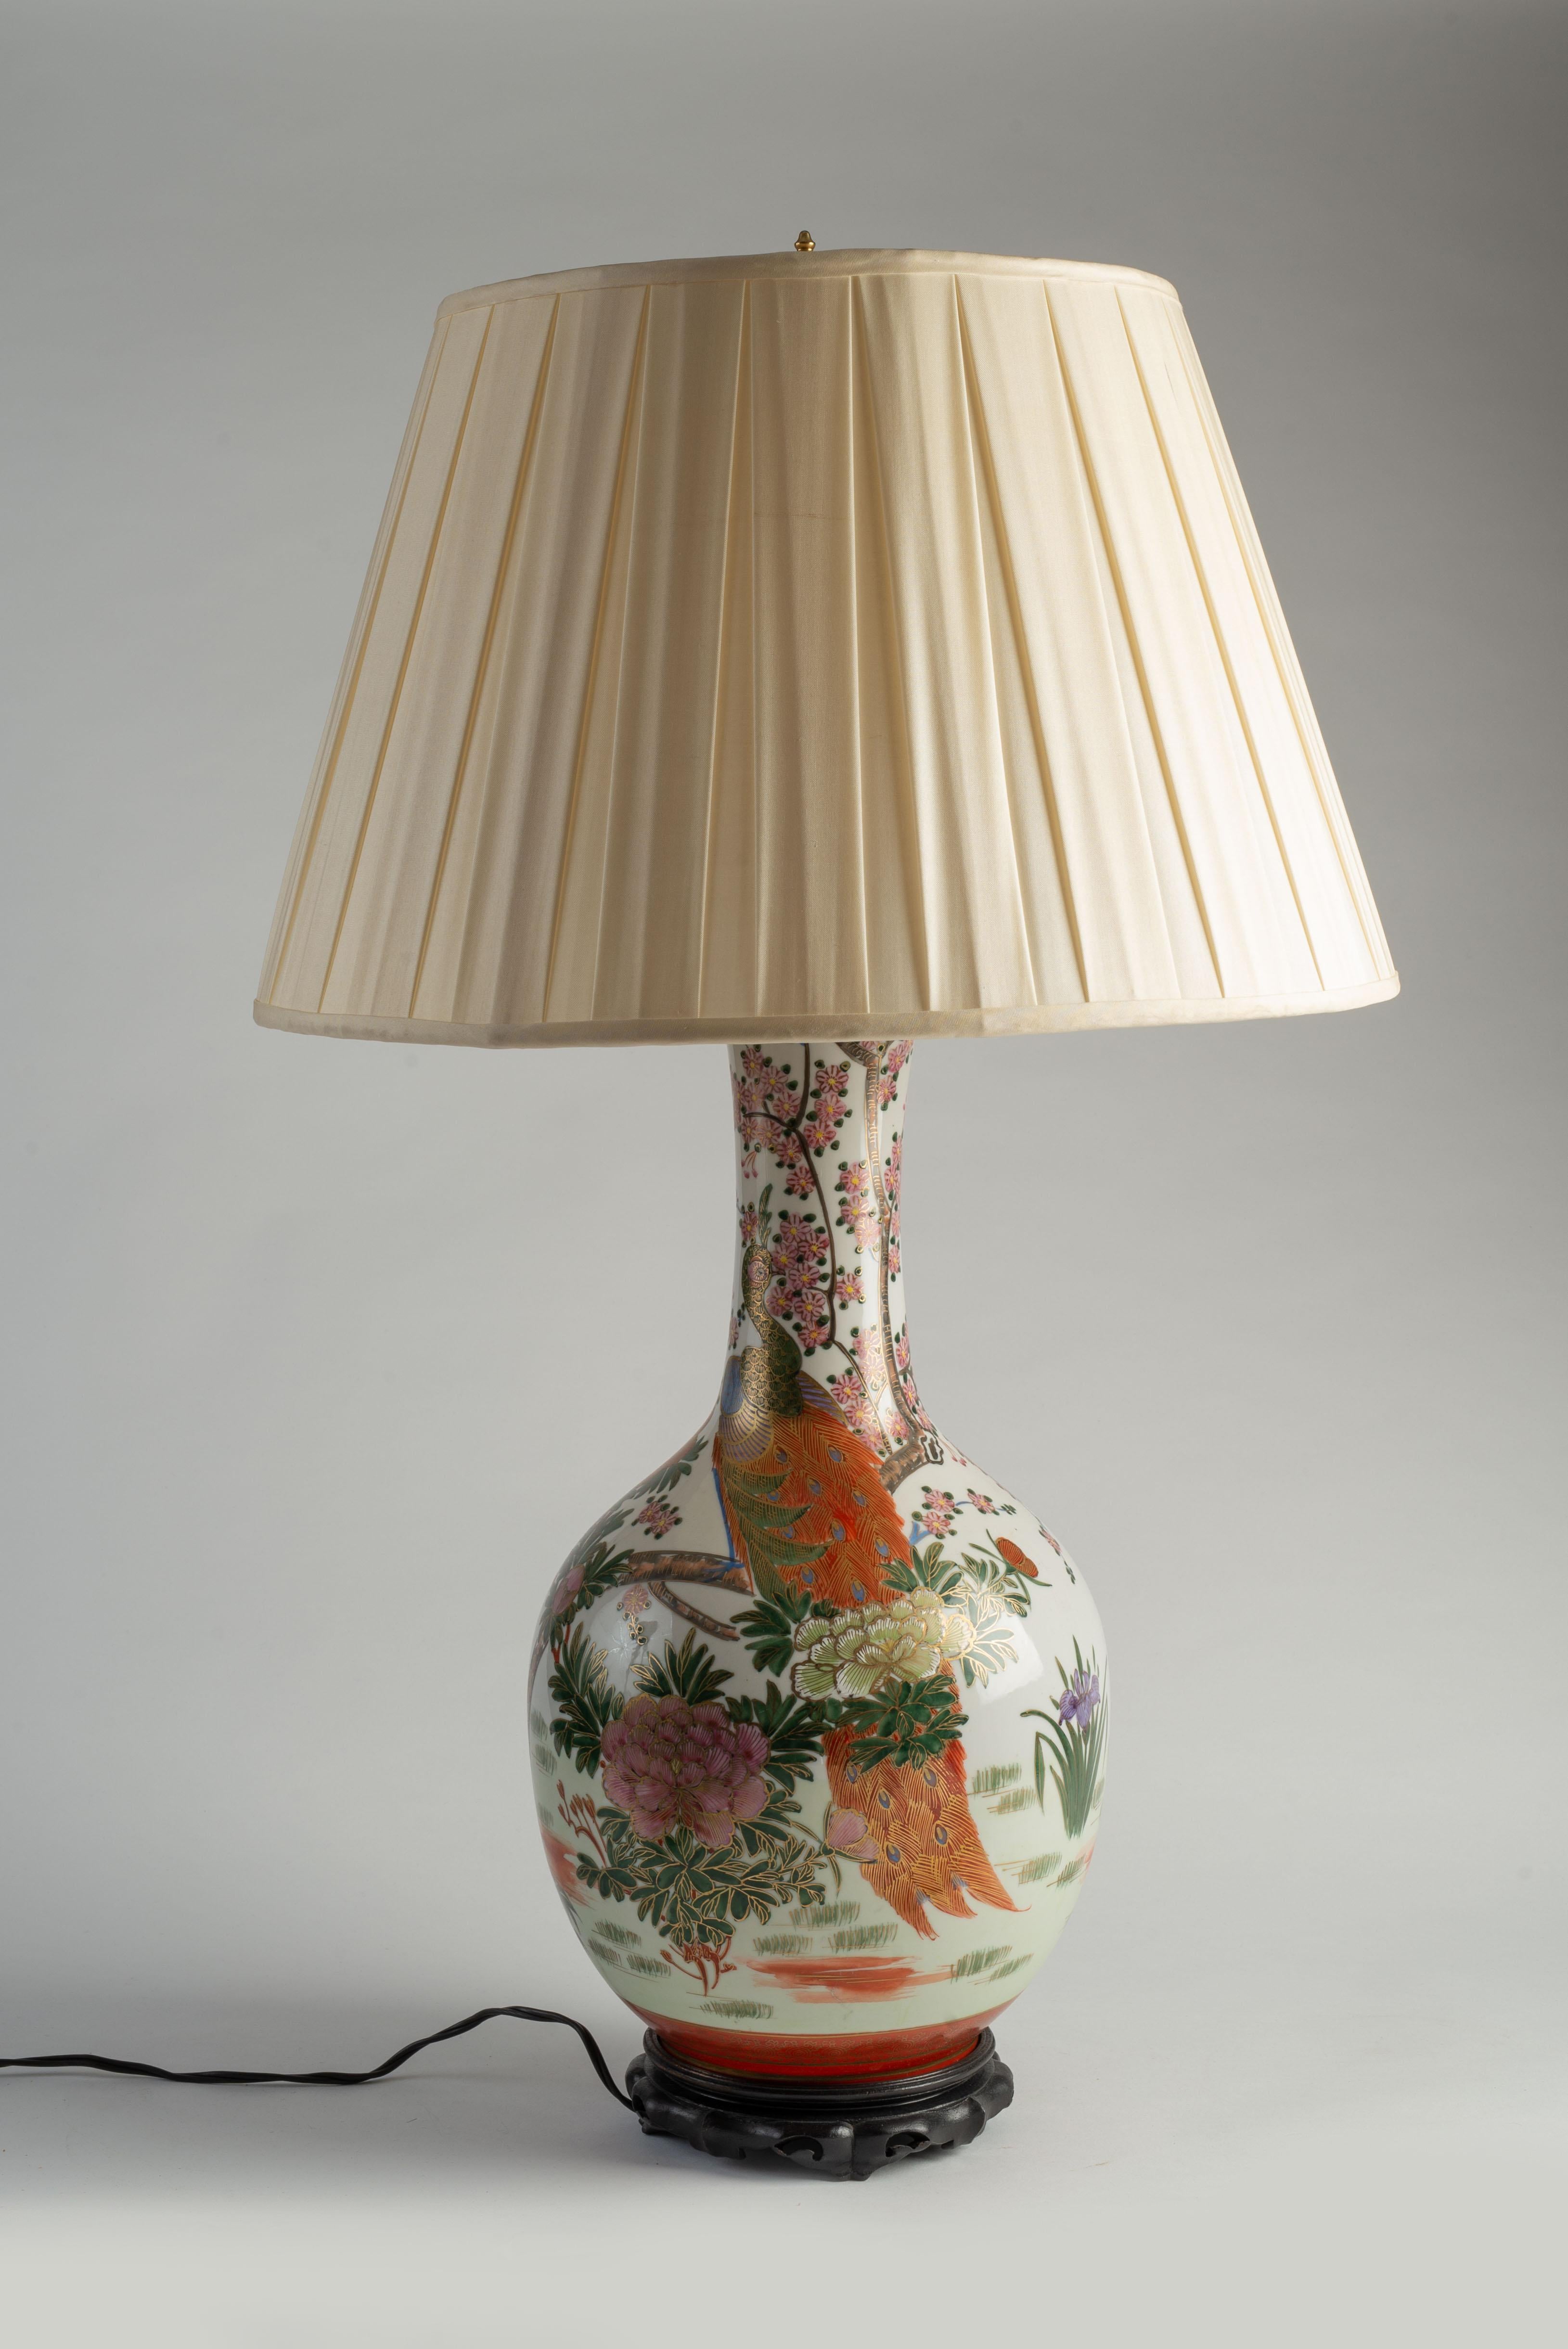 Chaque vase en porcelaine est finement décoré de fleurs, de roseaux et de paons aux couleurs vives dans le style de la famille rose chinoise. Chaque vase repose sur une base en bois de style chinois et est orné d'un abat-jour en soie. 